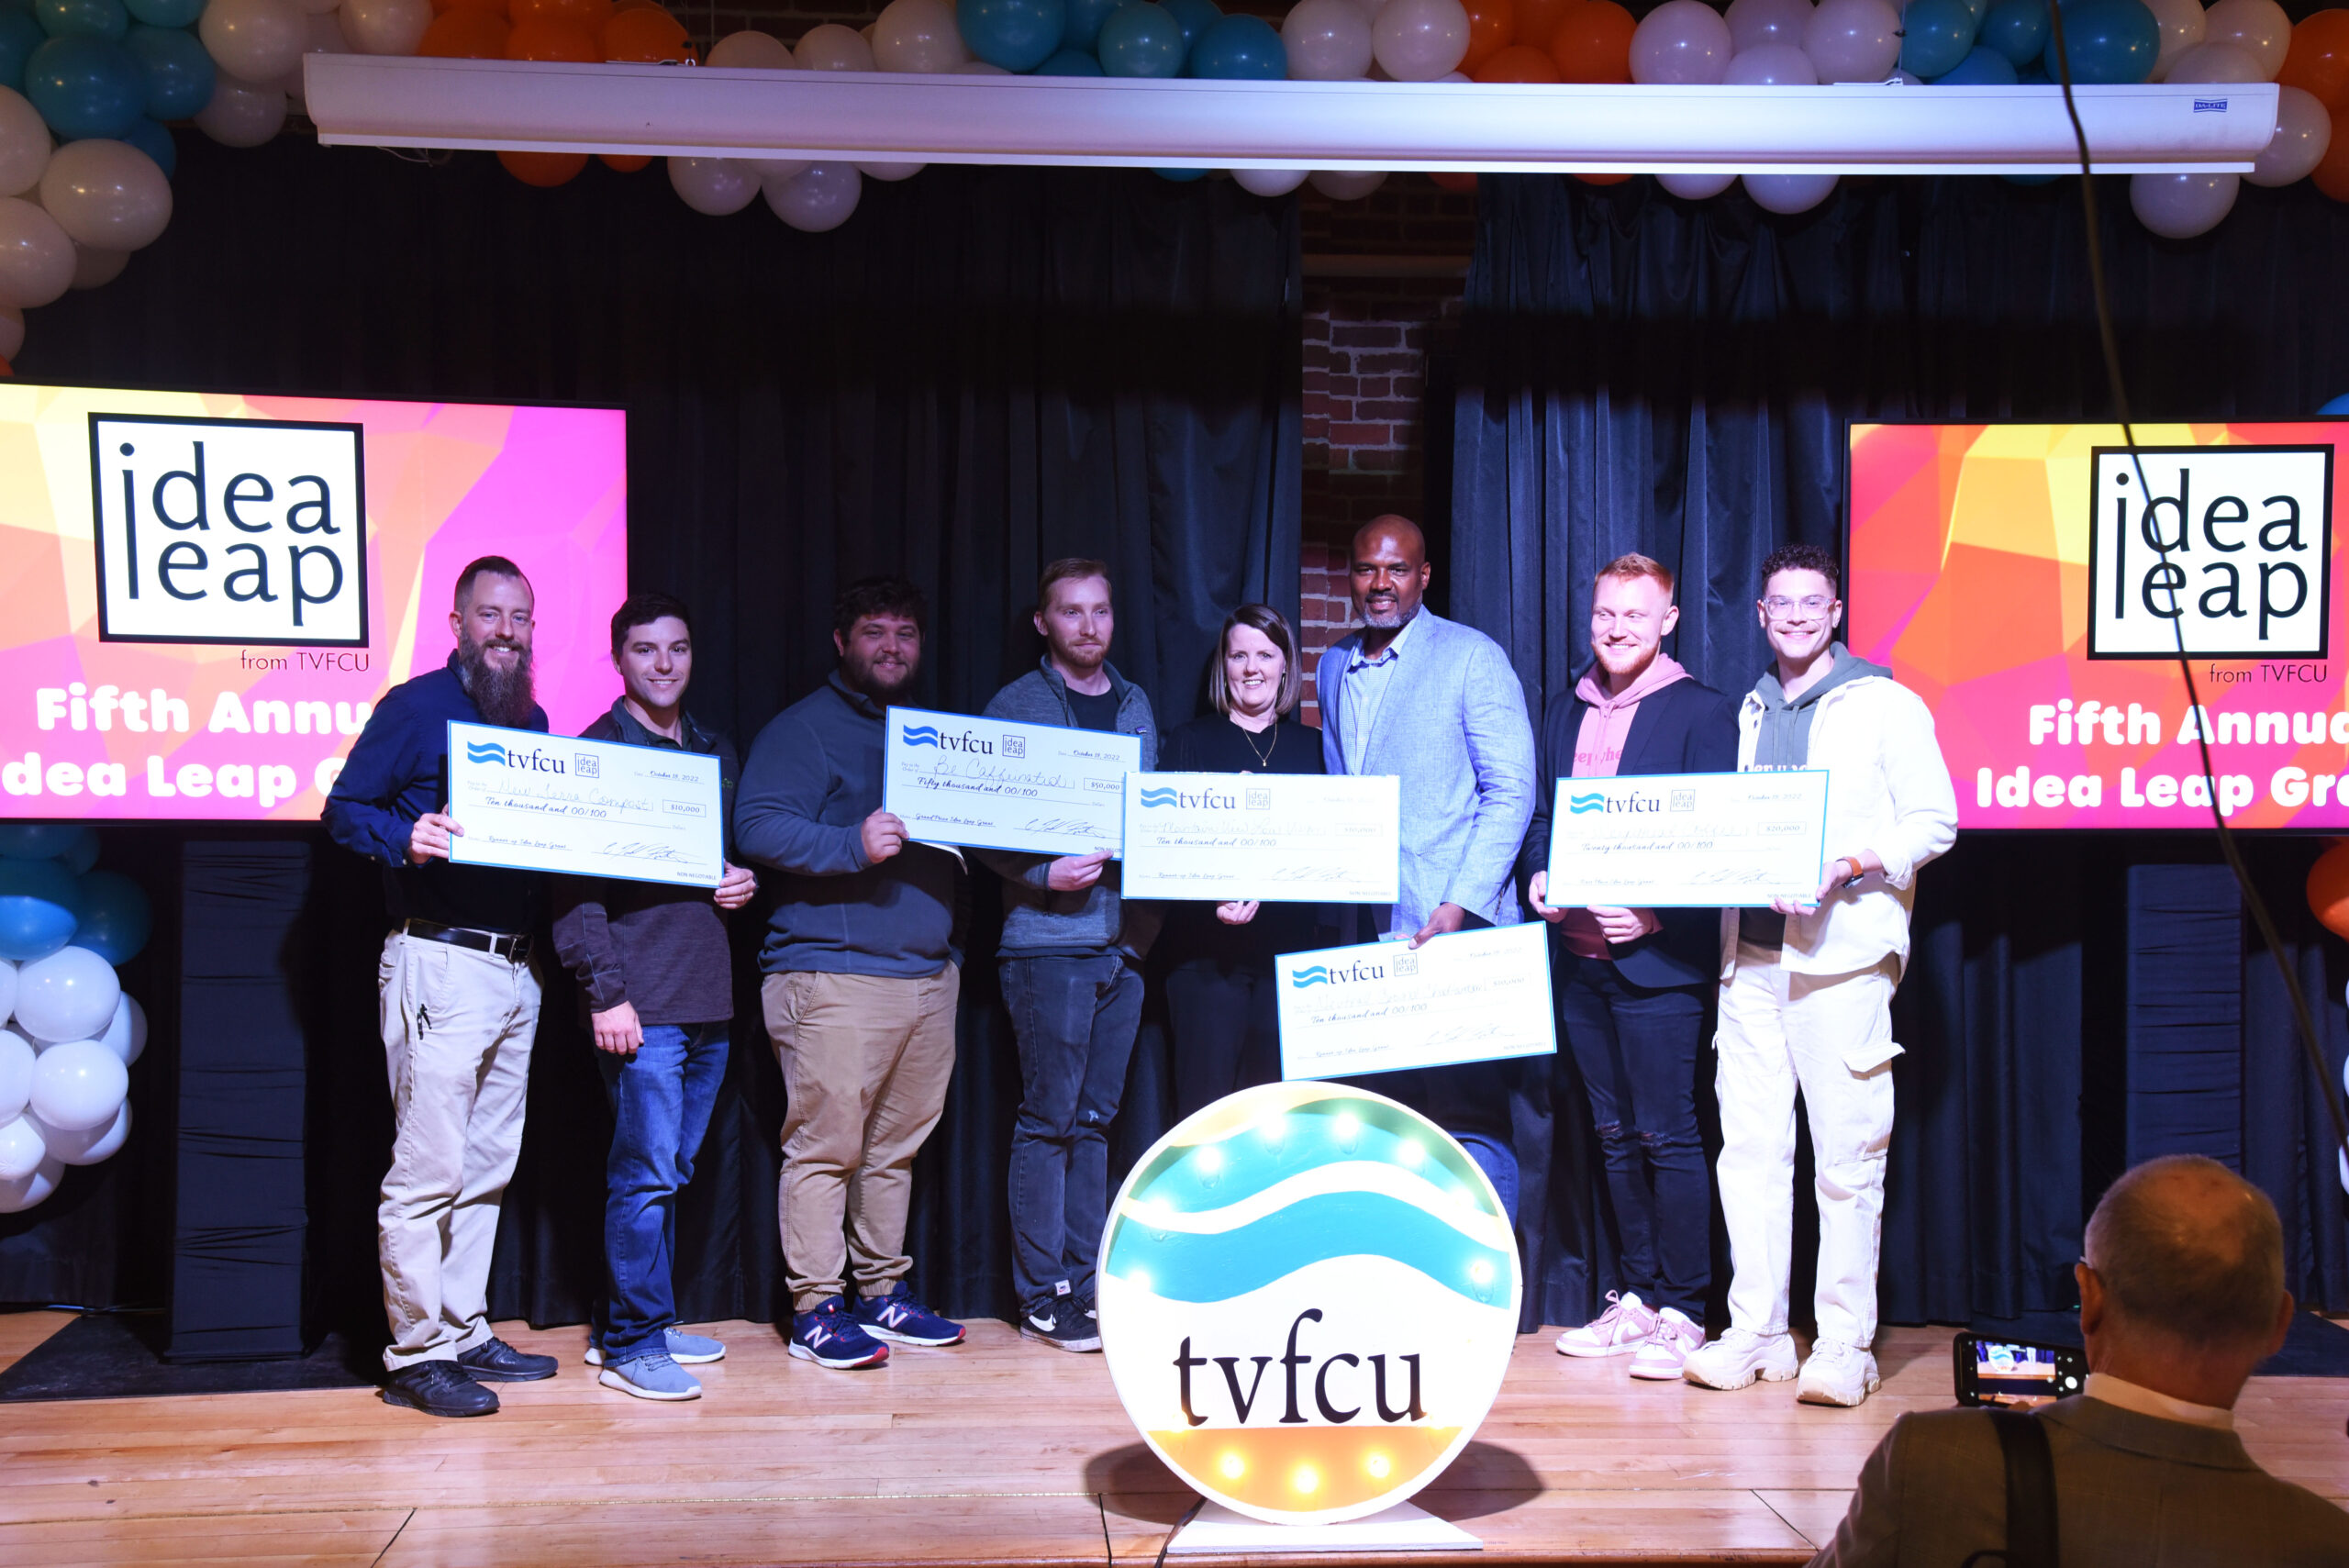 TVFCU's Idea Leap Grant Winners